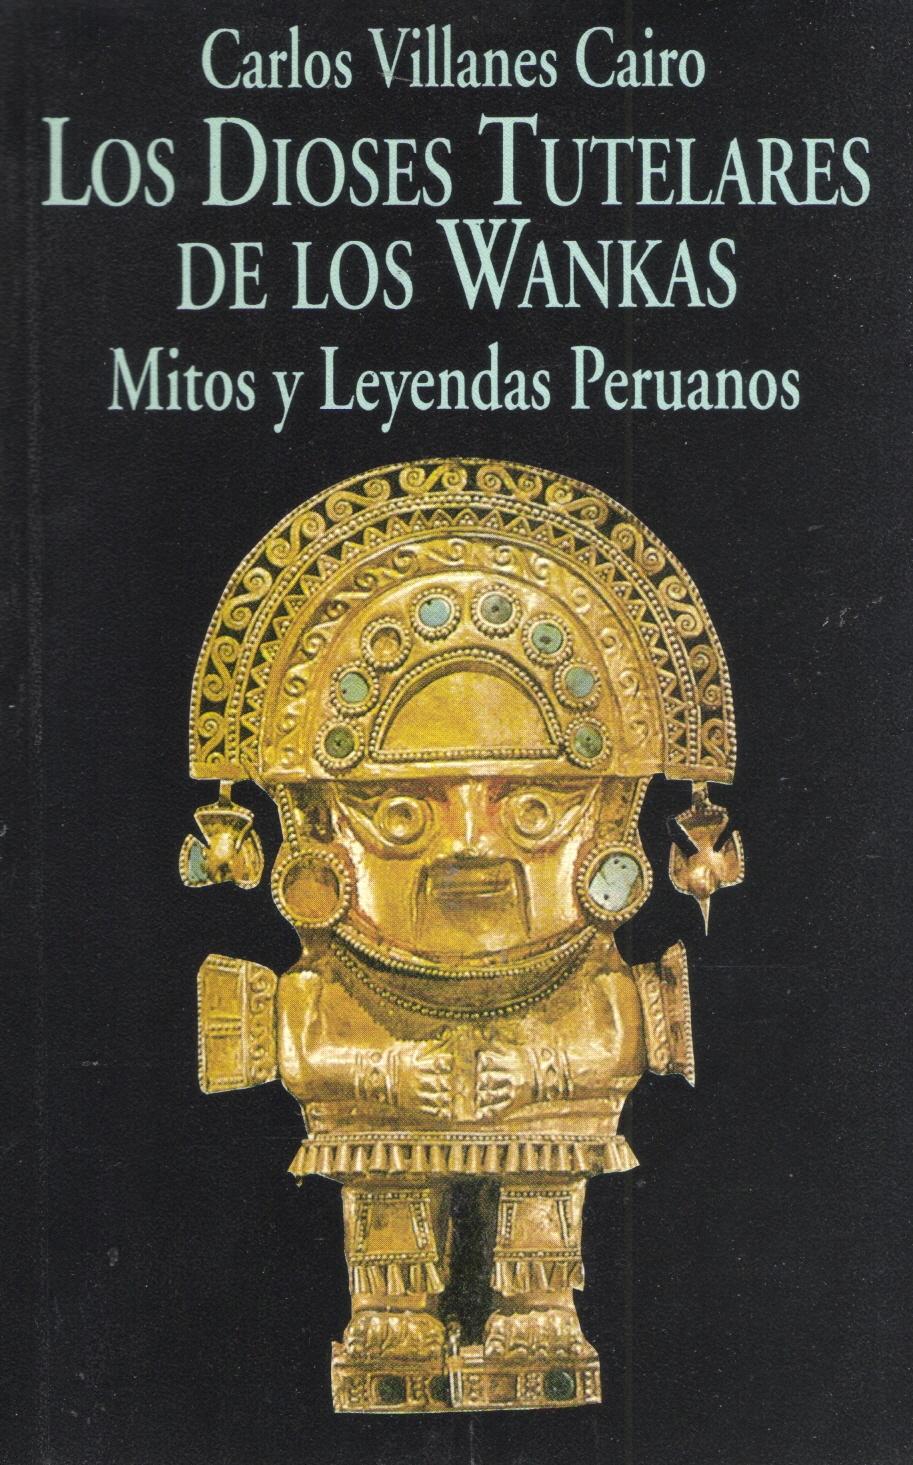 Los Dioses Tutelares de los Wankas "Mitos y leyendas peruanos". 